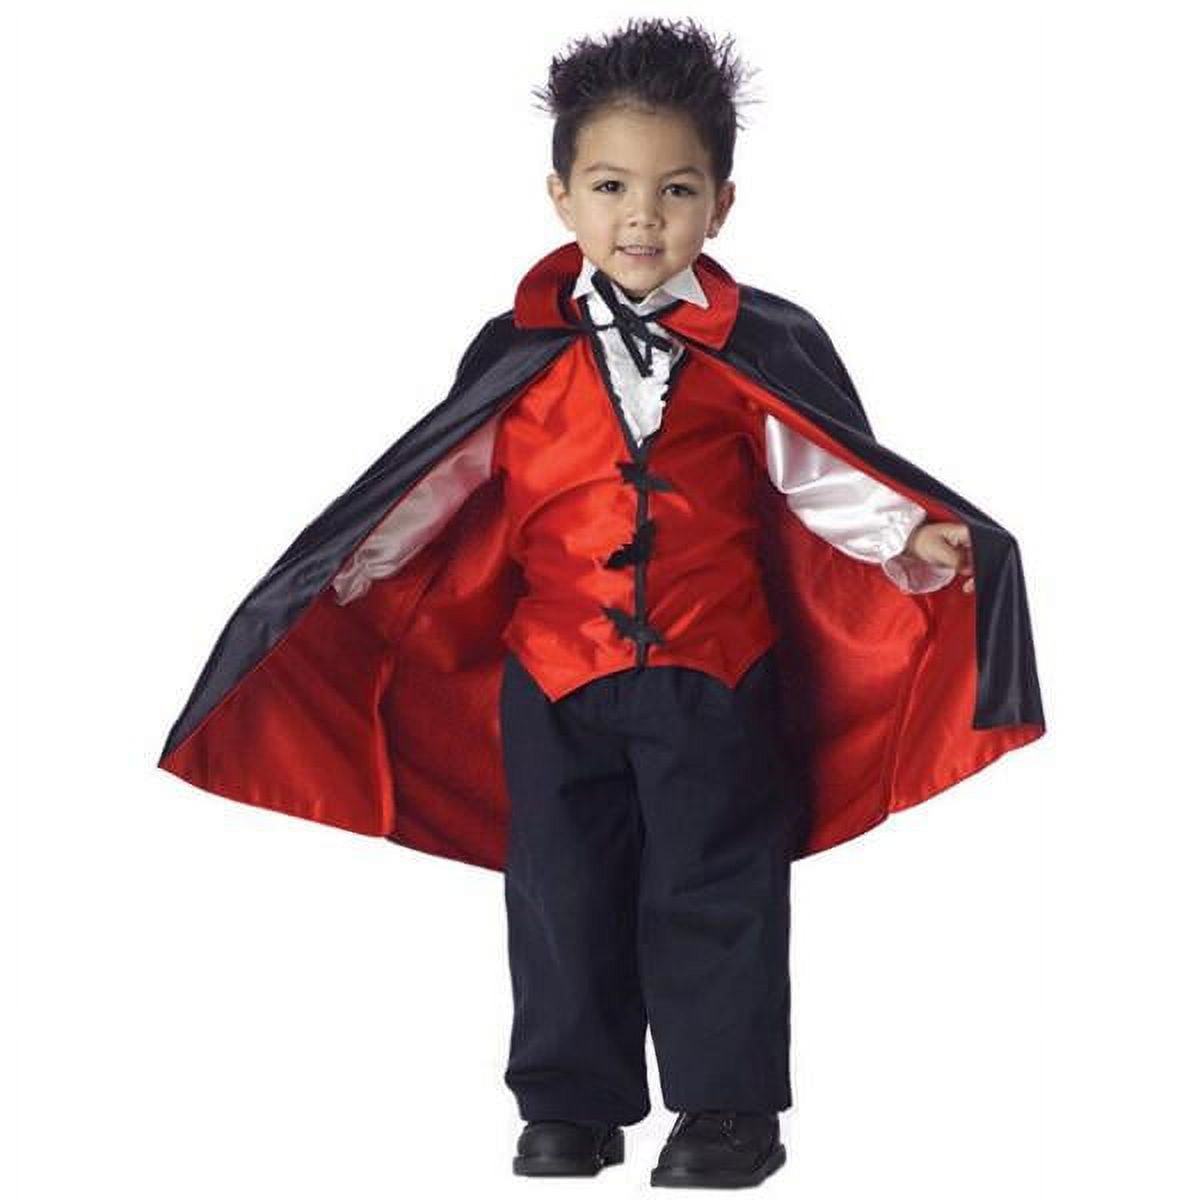 10 Best vampire costume kids ideas  vampire costume kids, vampire costume,  vampire costumes